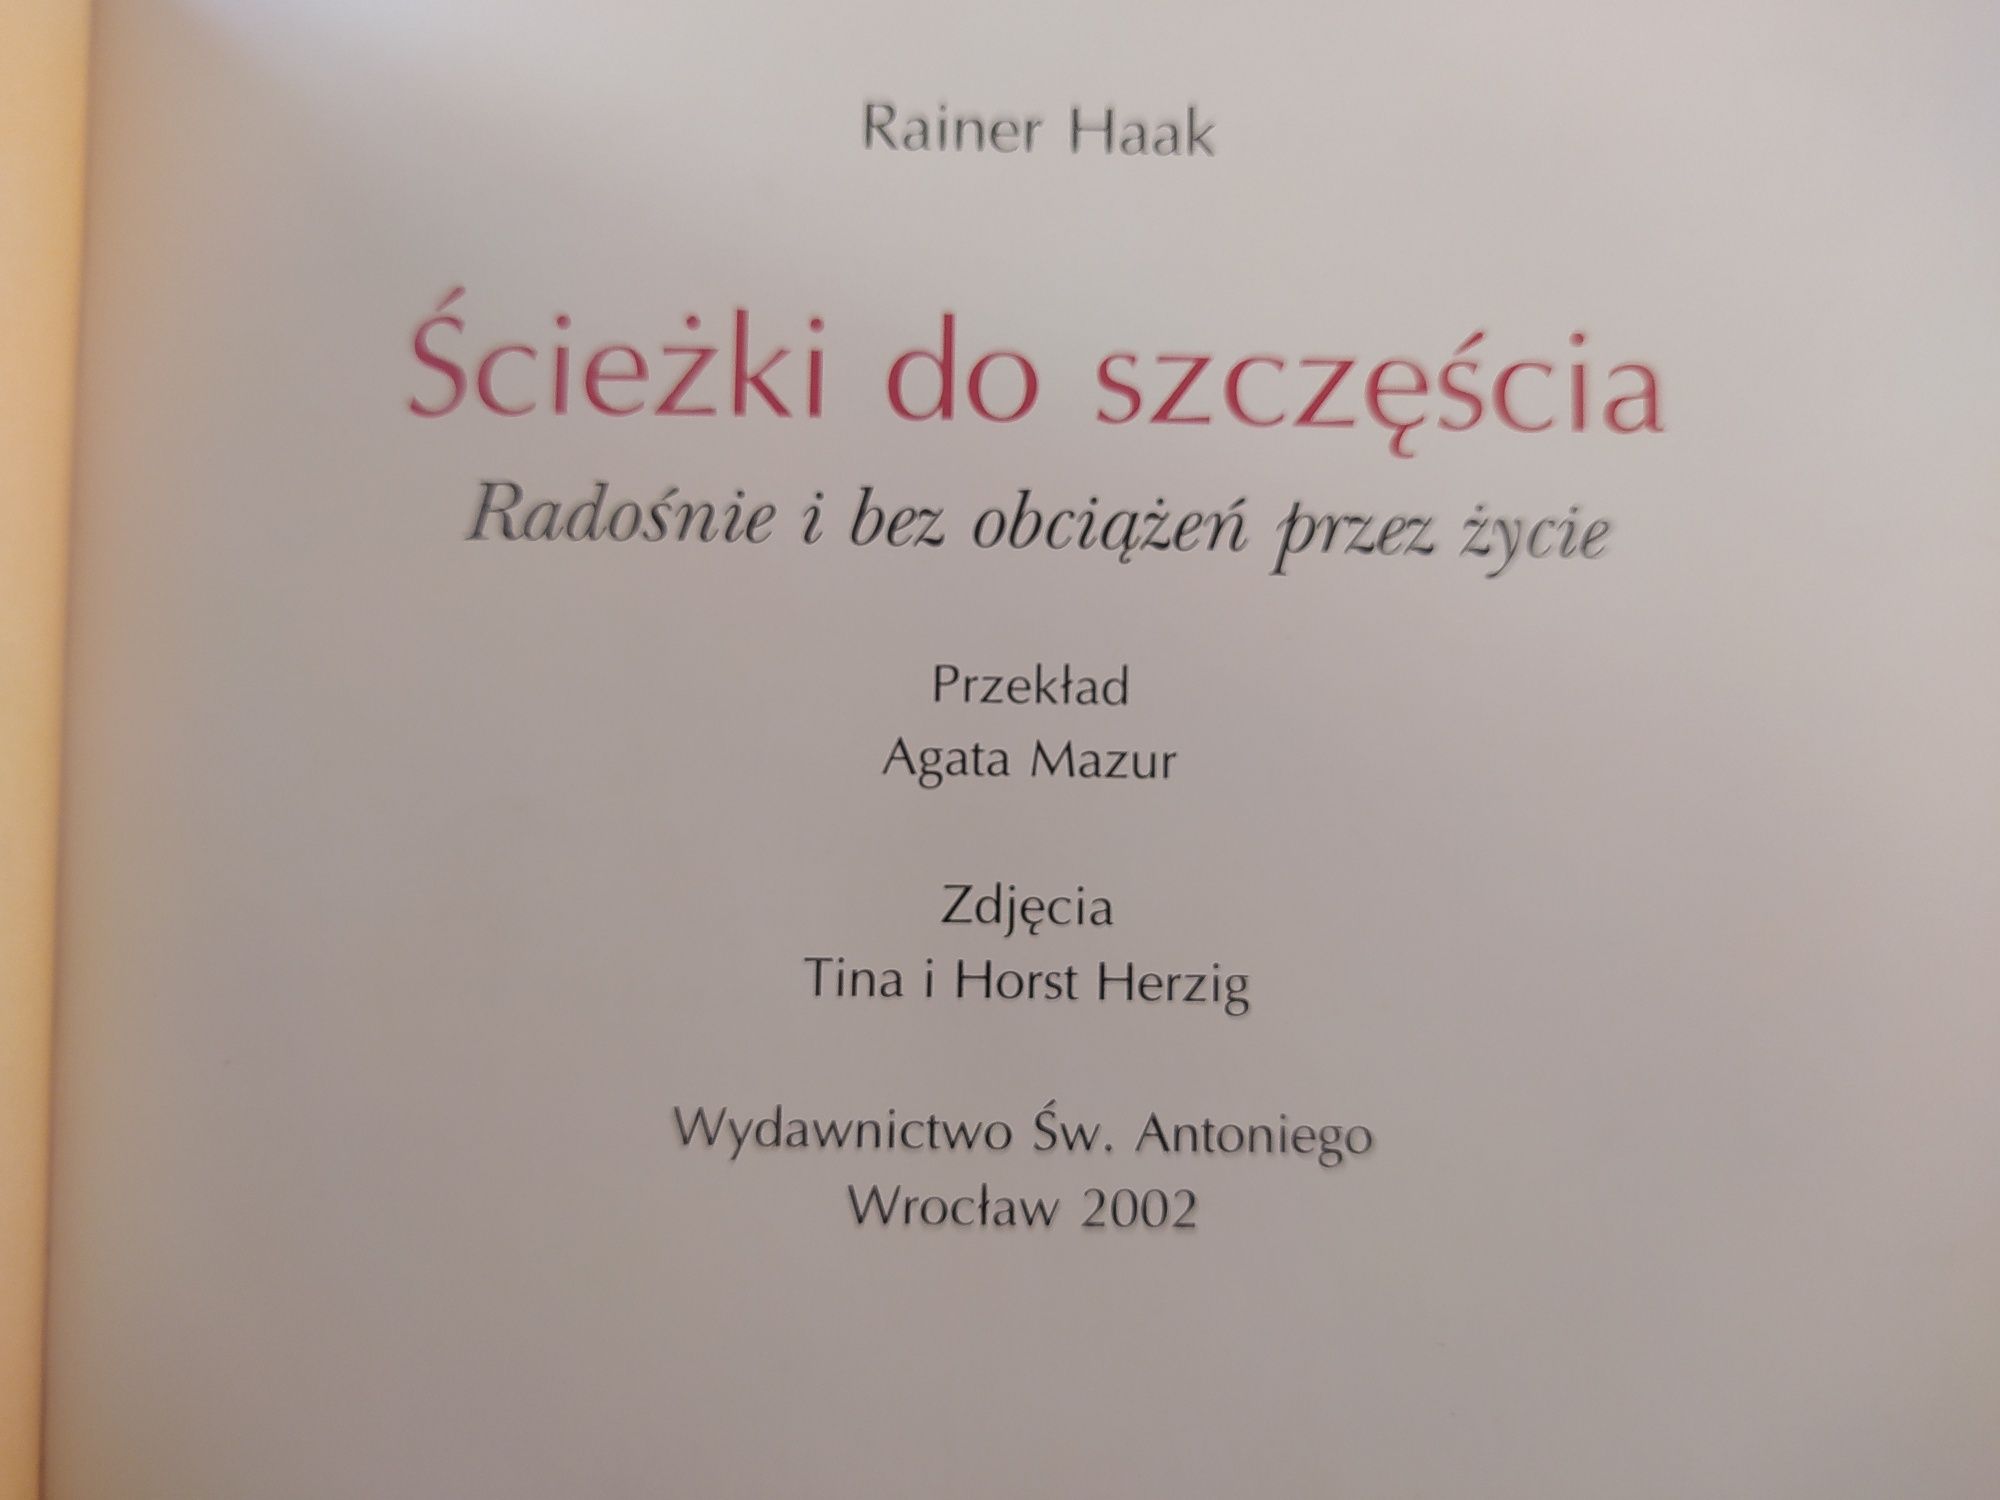 Ścieżki do szczęścia Rainer Haak Antoni 2002 Radośnie i bez obciążeń